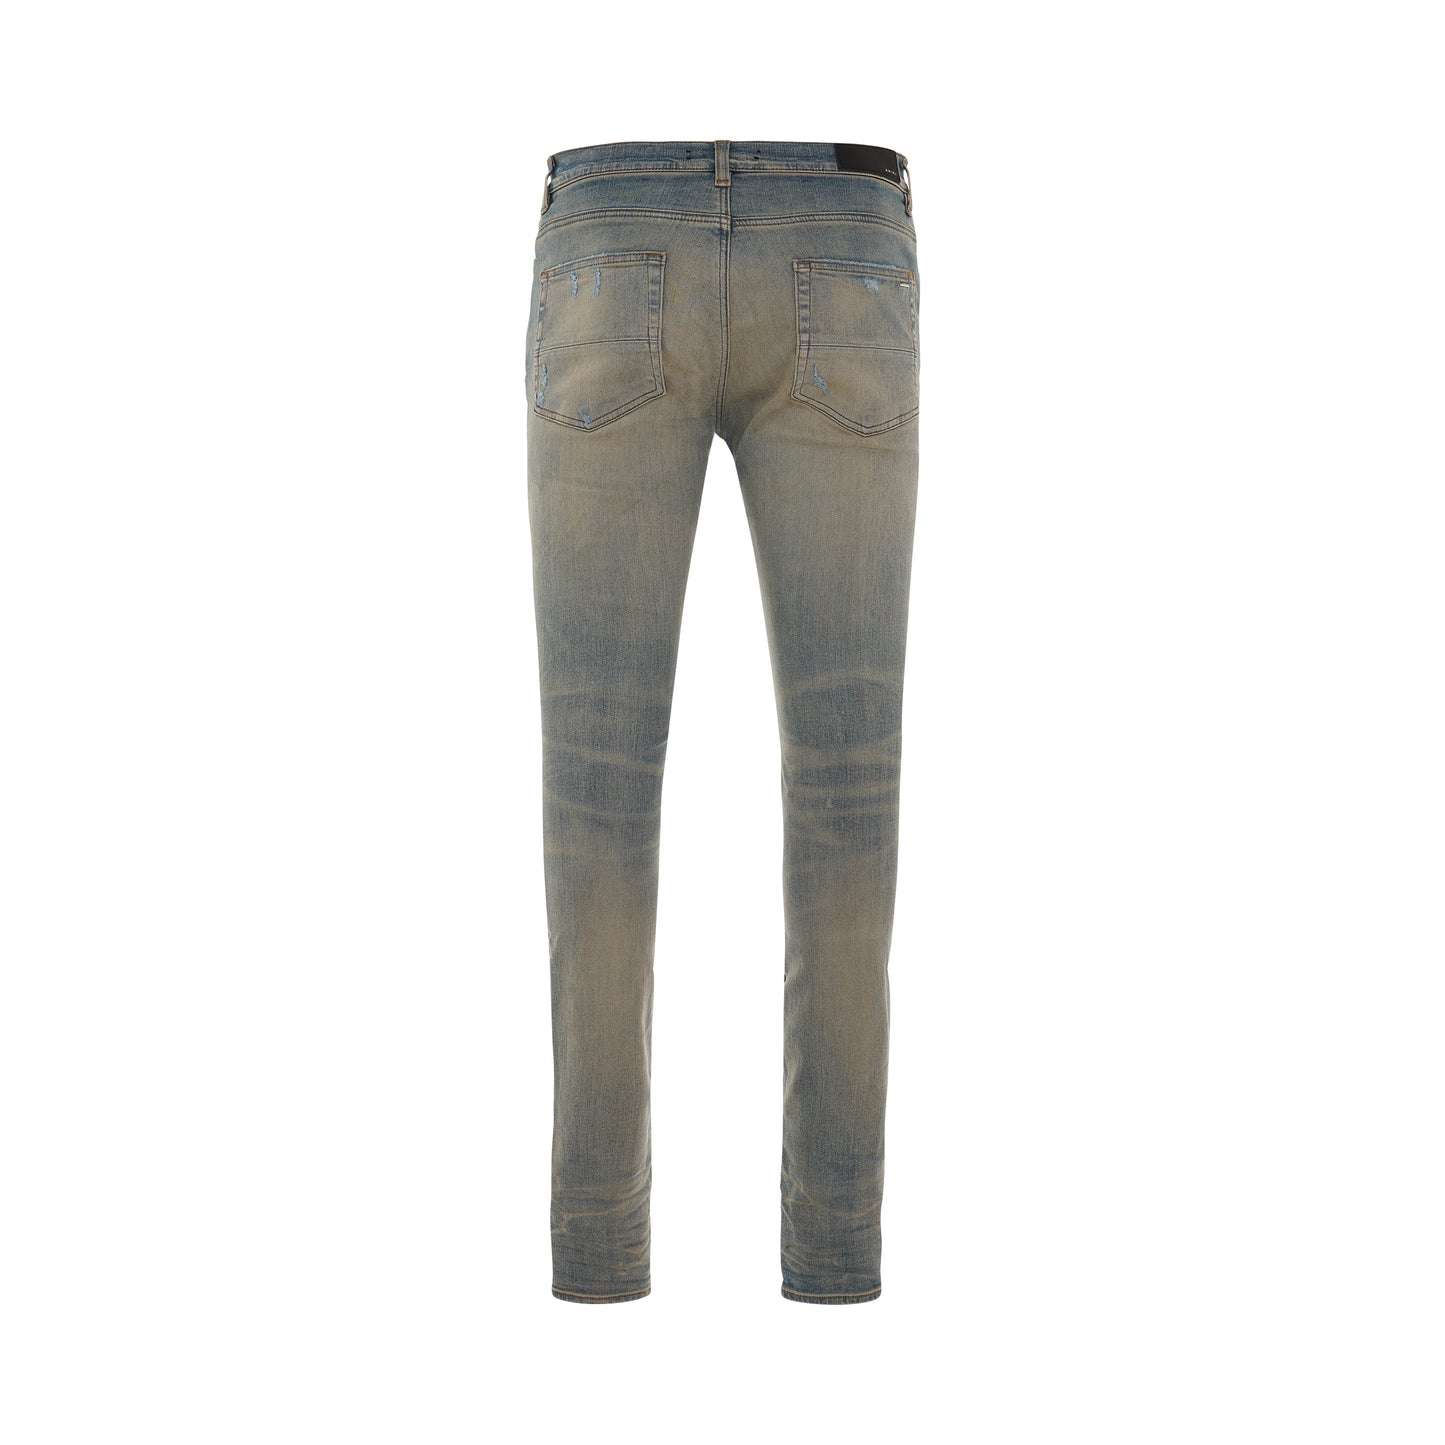 MX1 Bandana Jeans in Clay Indigo